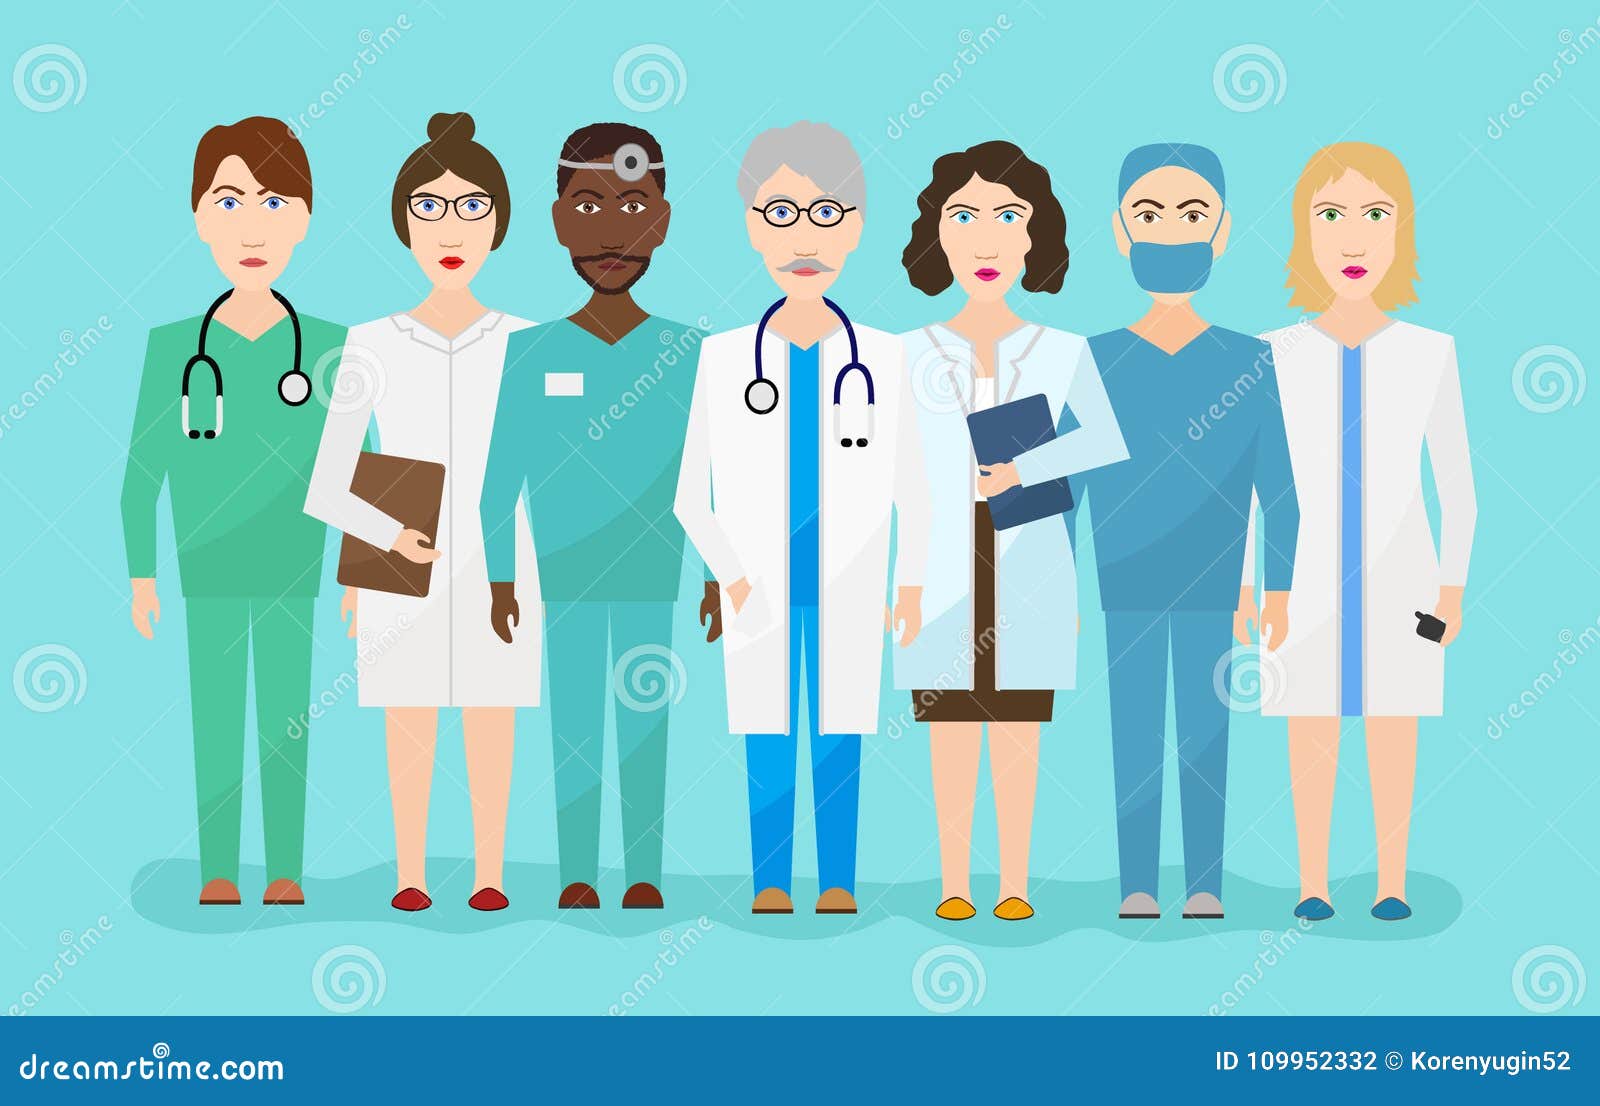 Personagem de desenho animado plana da equipe médica usando máscara  protetora no fundo branco. equipe de médico e enfermeiro.